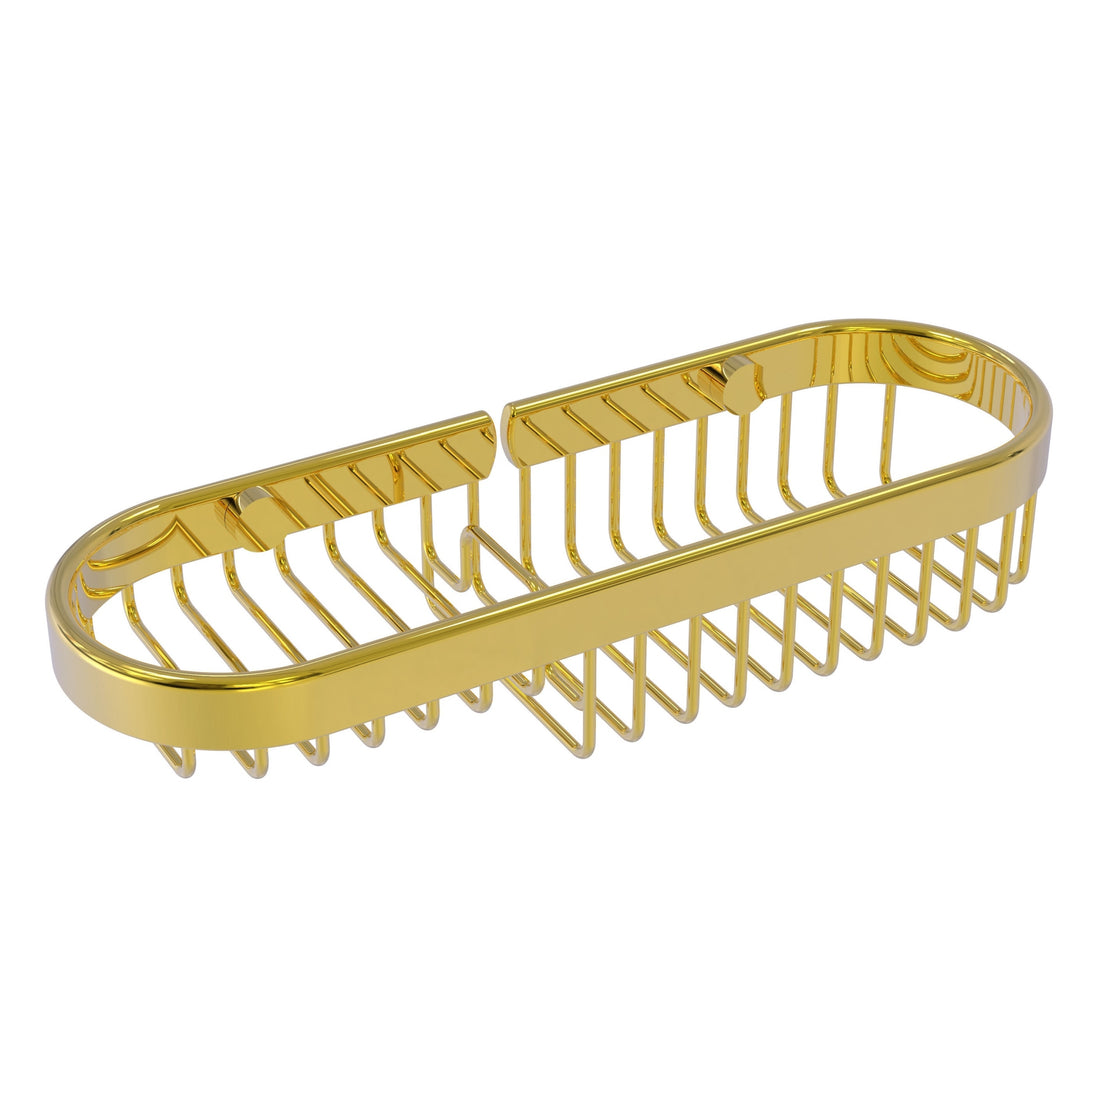 Combination brass wire shower basket